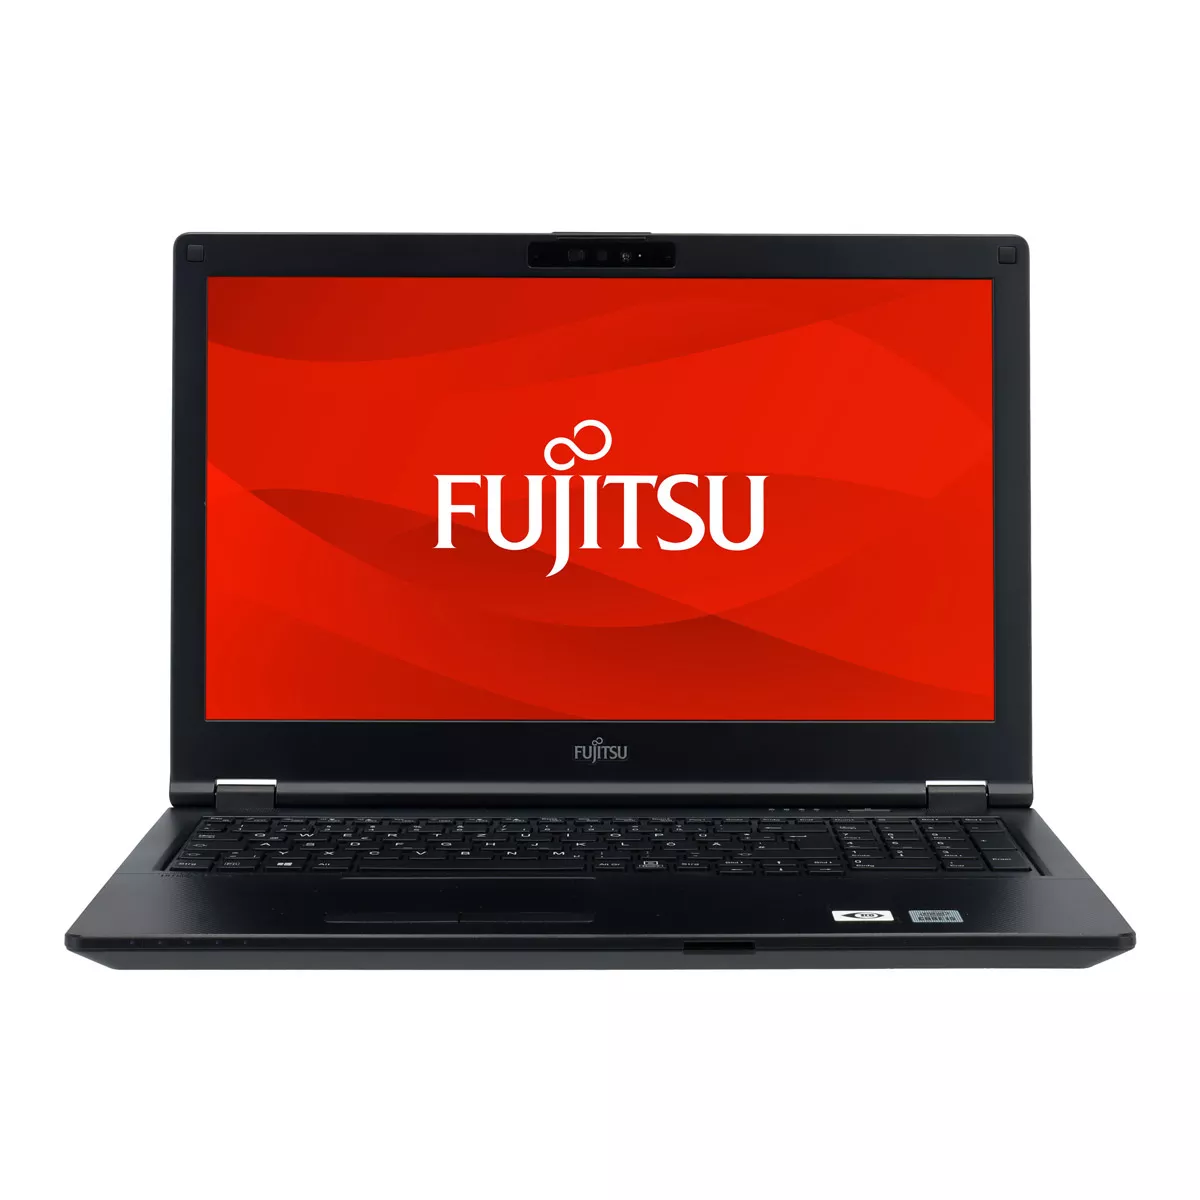 Fujitsu Lifebook E558 Core i3 7020U 8 GB 500 M.2 SSD A+